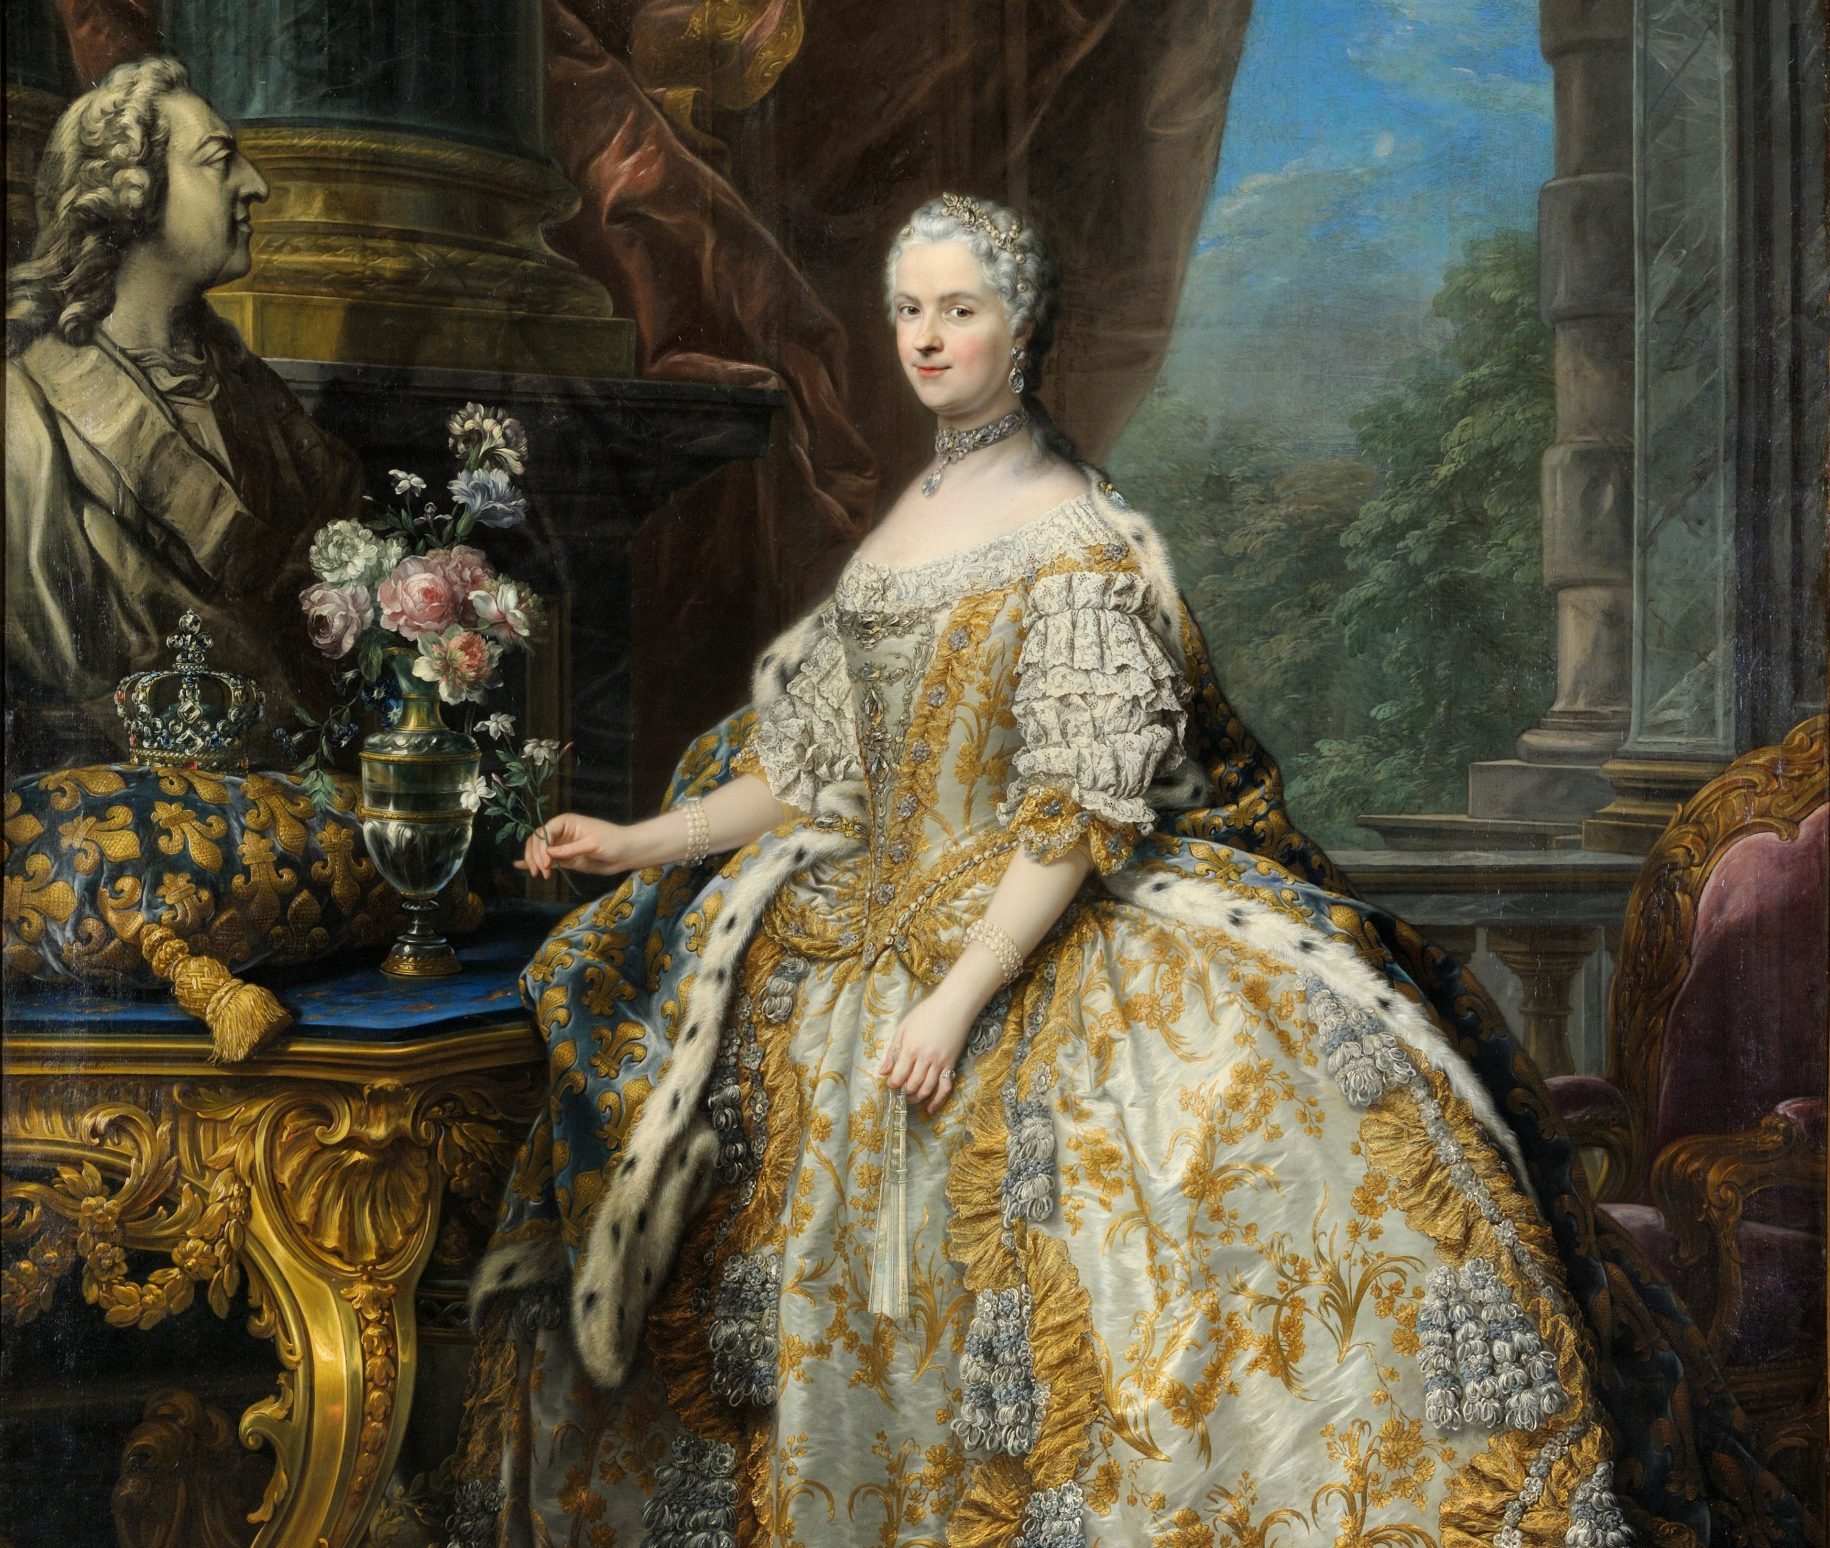 18th century Costume- Robe a la Française — Period Corsets